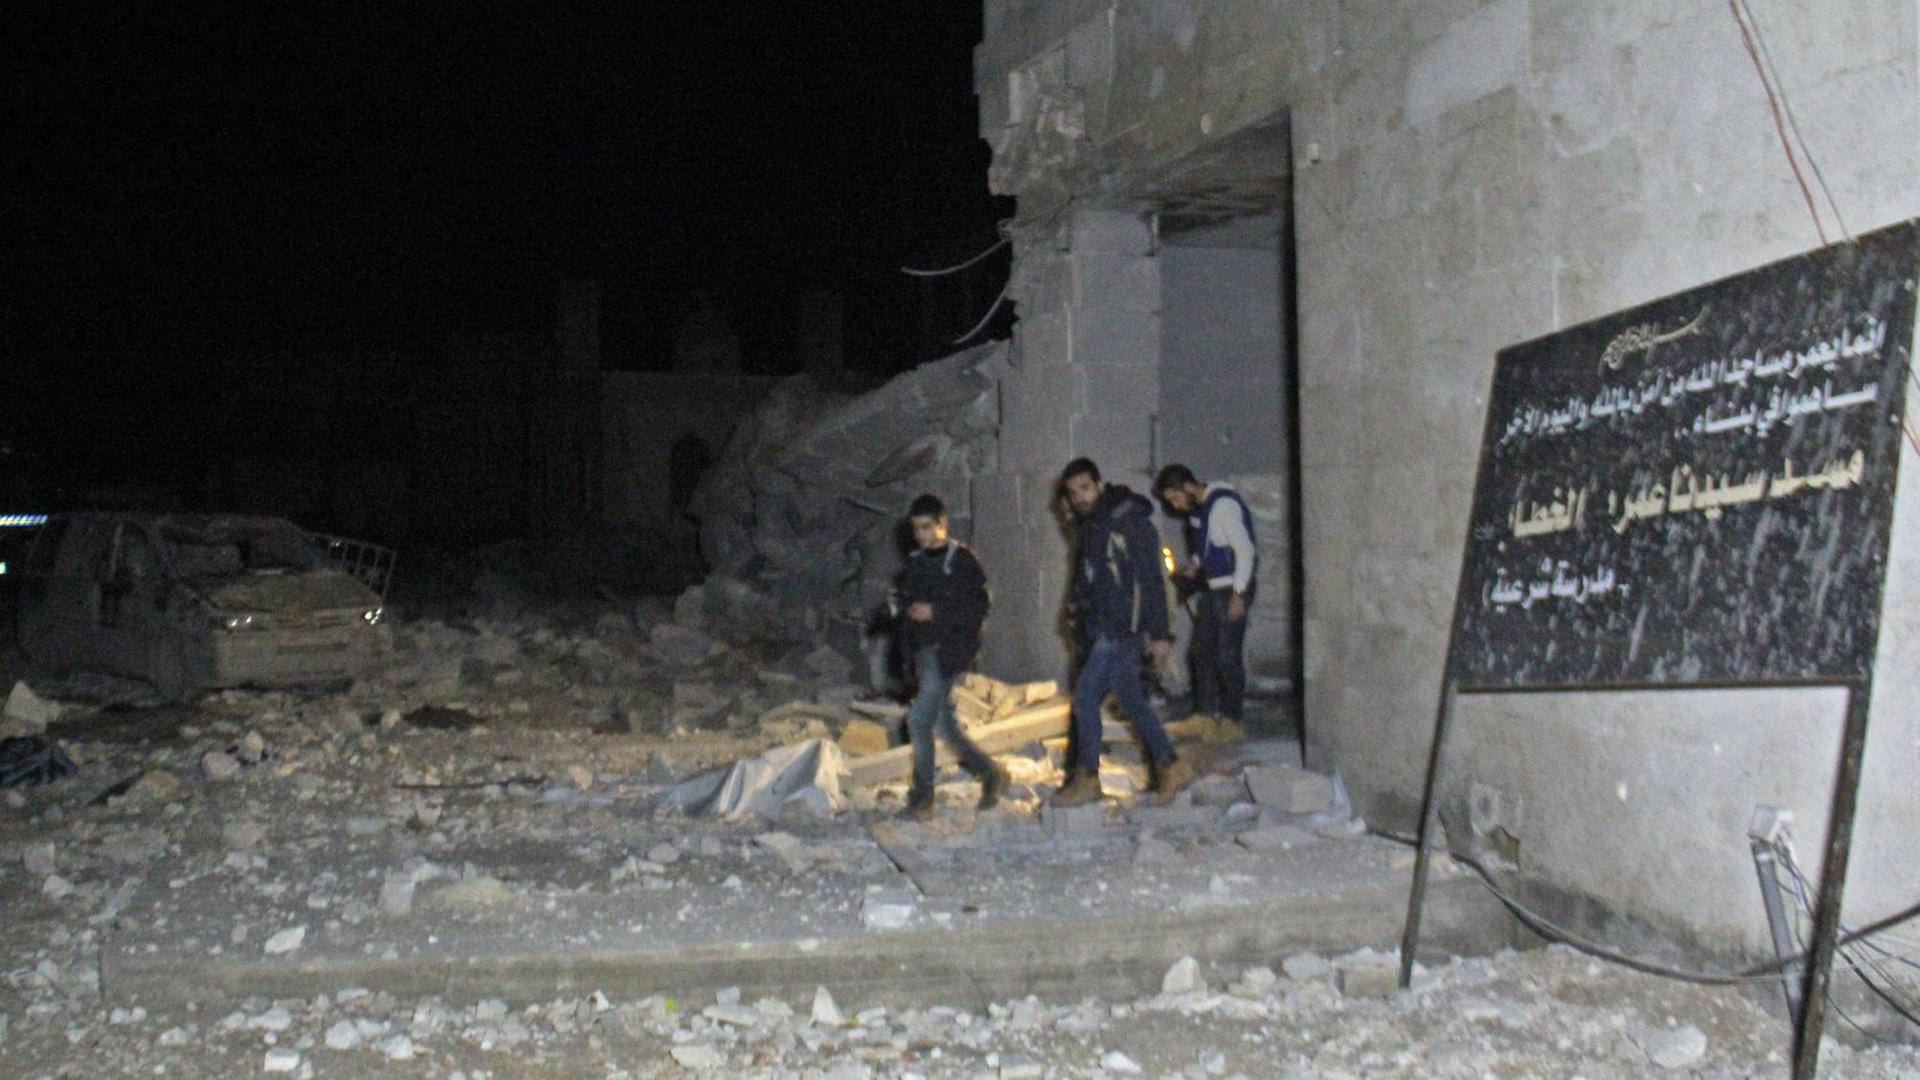 Mehrere Menschen treten aus einem halb-zerstörten Gebäude. Im Vordergrund ein Schild mit arabischer Schrift.